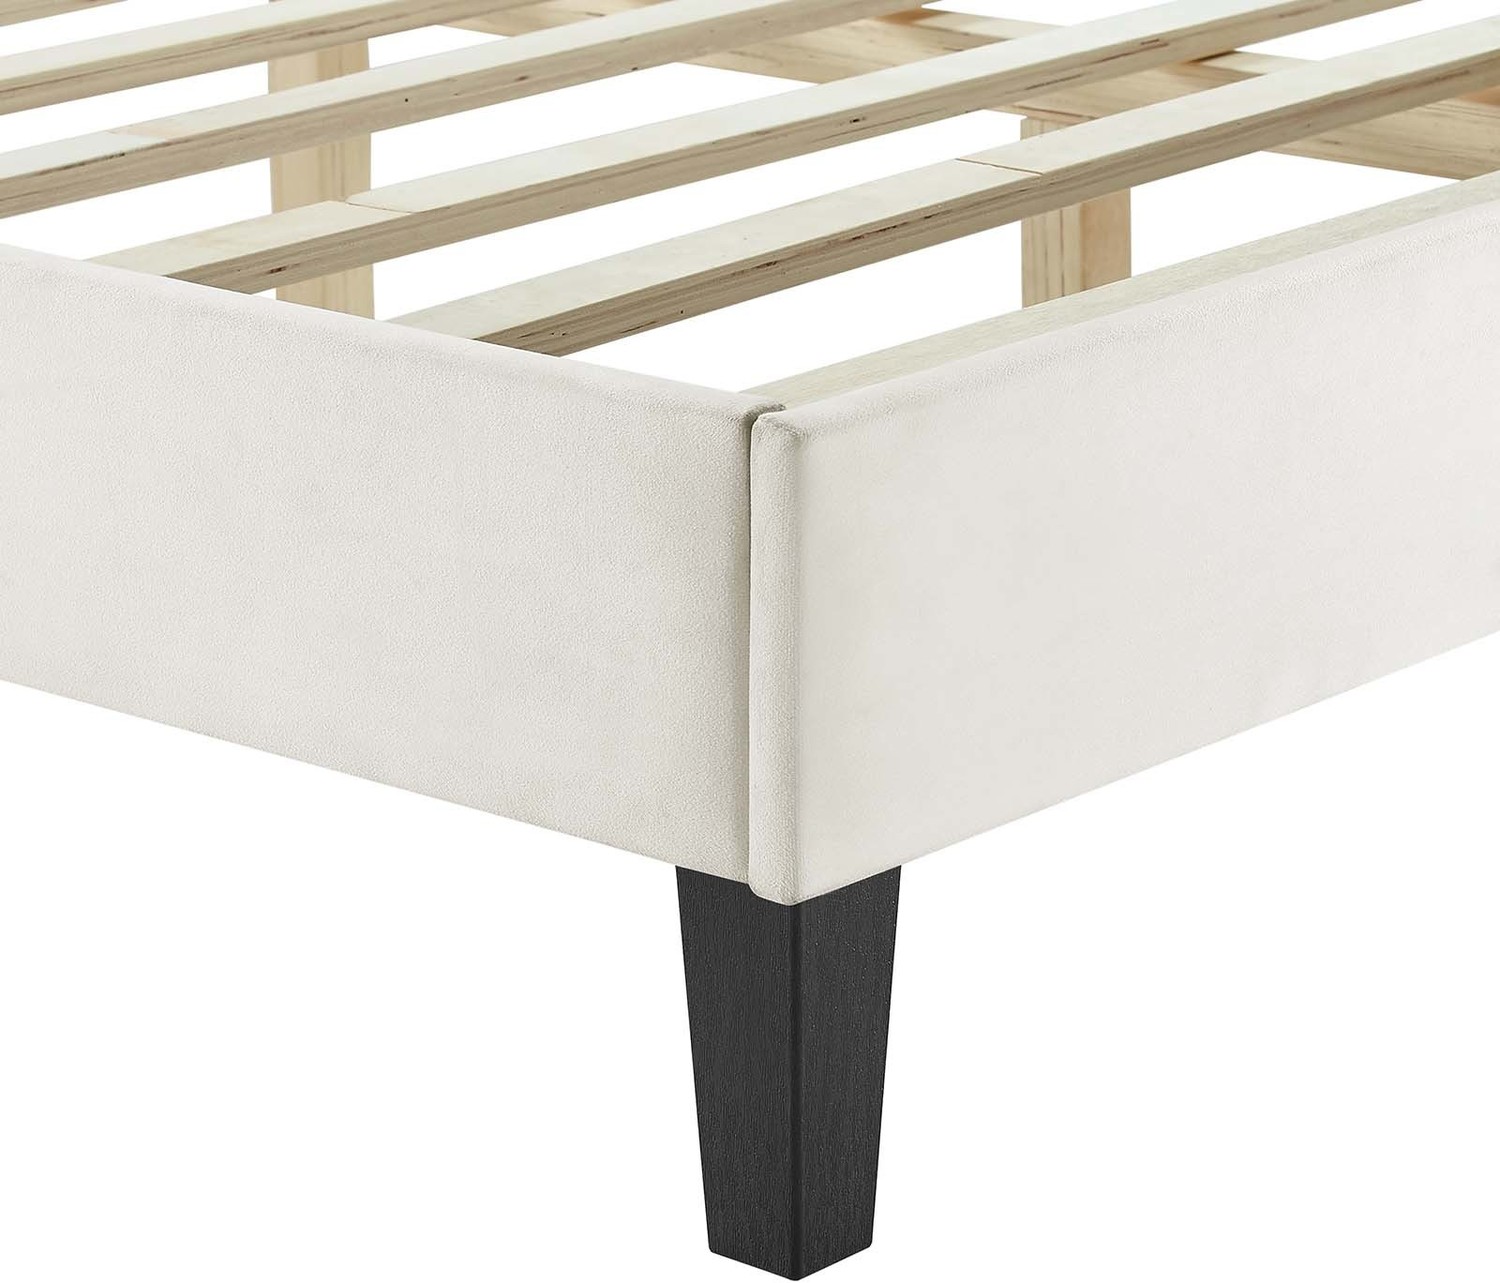 king bed frames for adjustable beds Modway Furniture Beds White